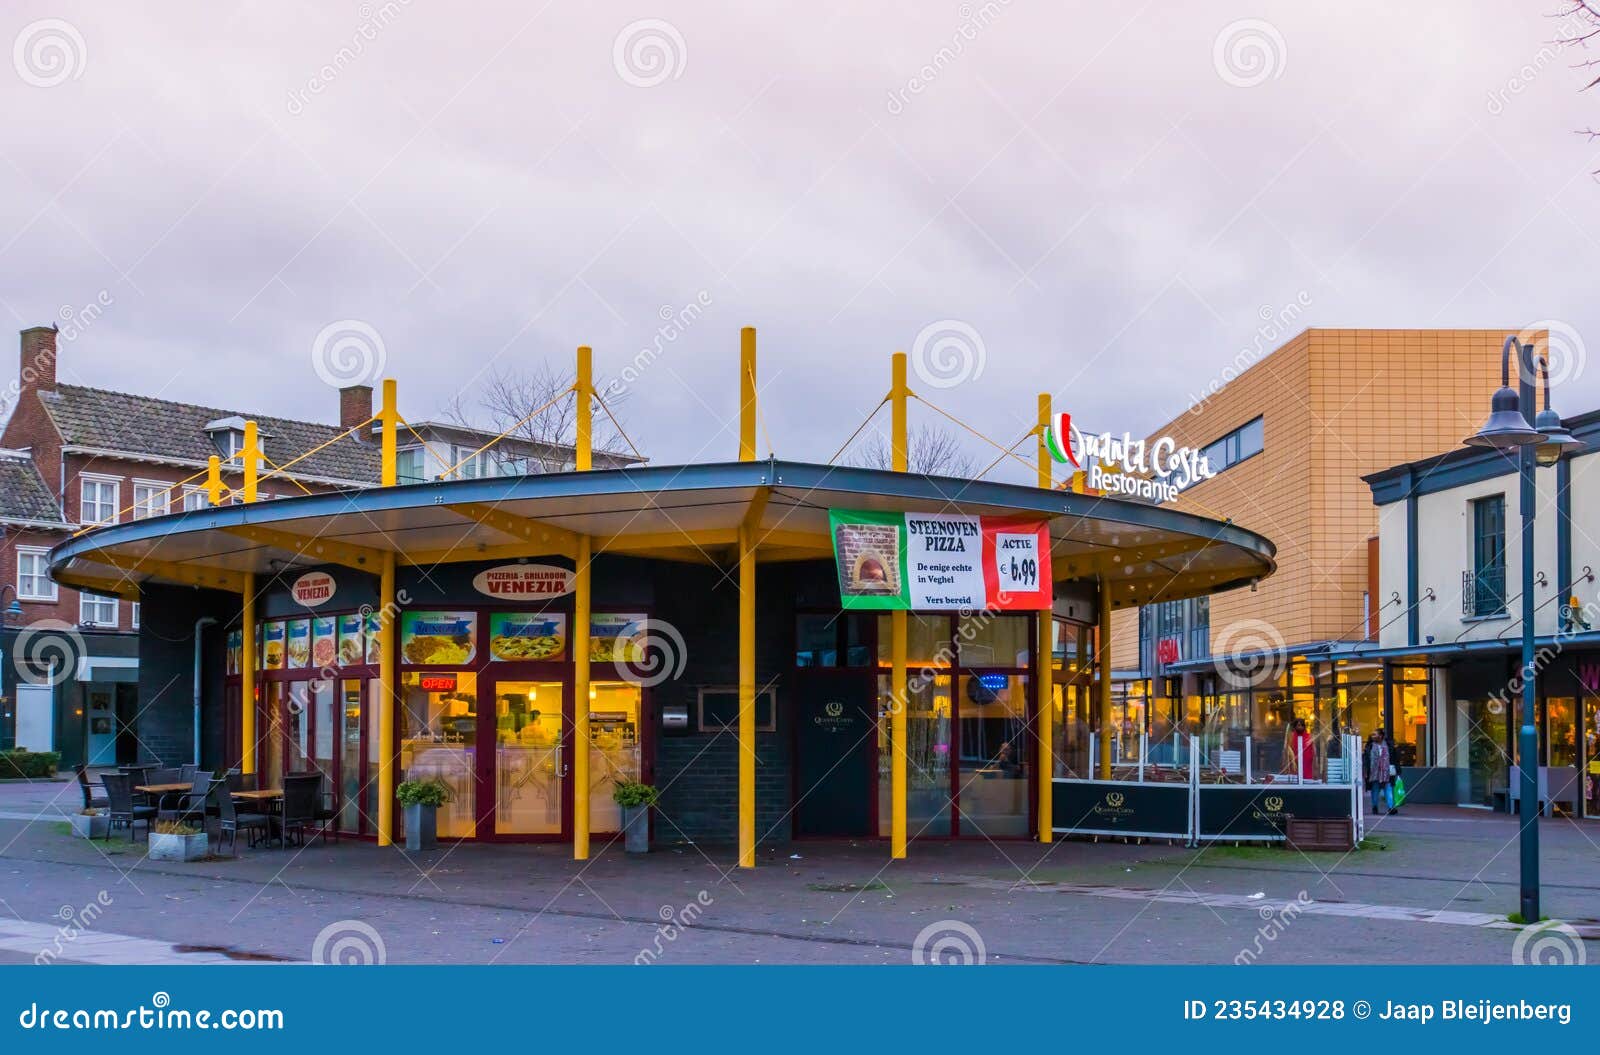 Pizzarestaurant Quanta Costa in Veghel Noordbrabant Nederland 13 2020 Redactionele Stock Foto - Image of winkelen, voedsel: 235434928